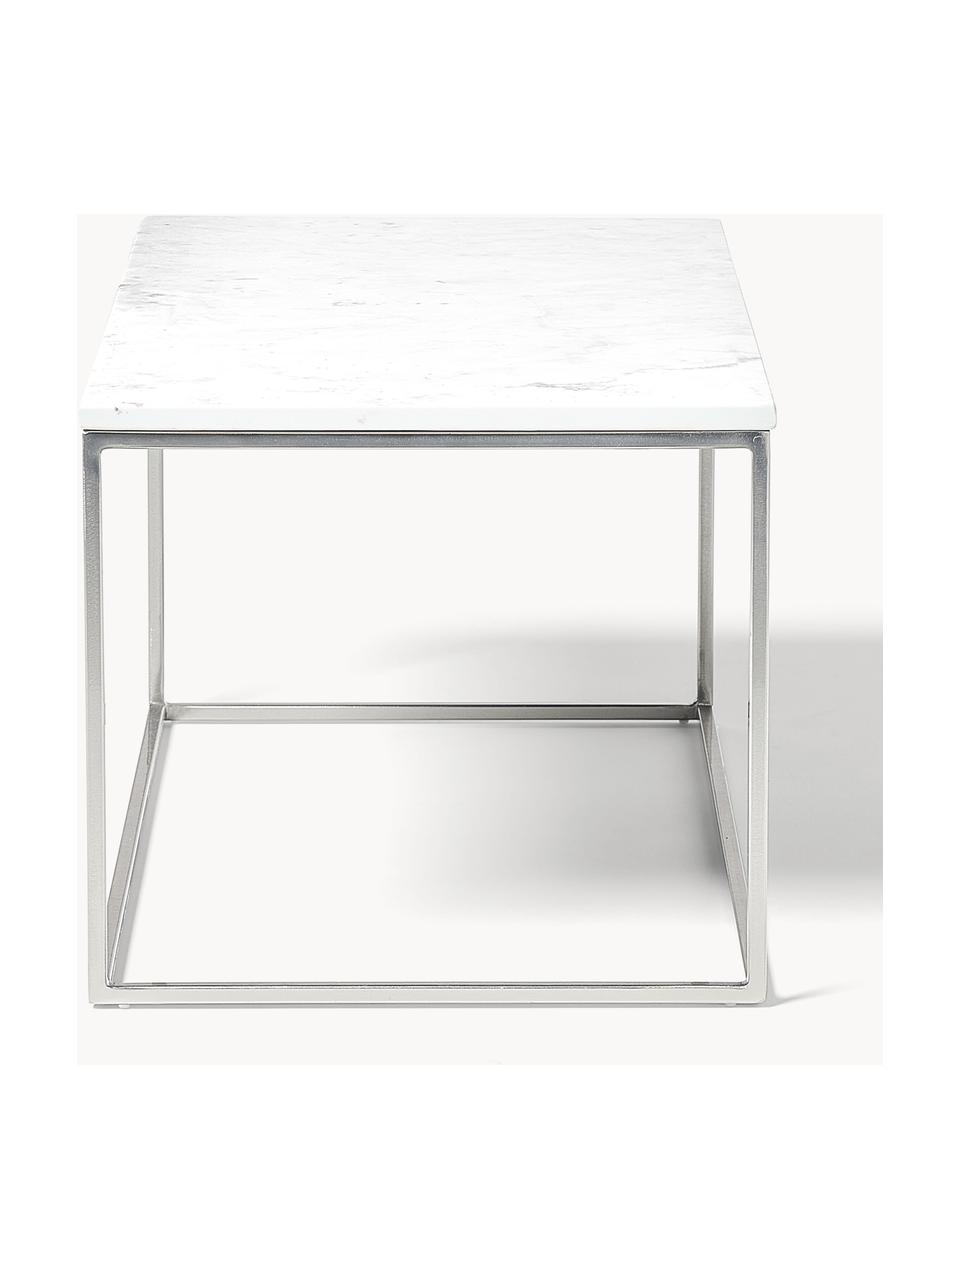 Marmor-Couchtisch Alys, Tischplatte: Marmor, Gestell: Metall, pulverbeschichtet, Weiß marmoriert, Silberfarben, B 80 x T 45 cm